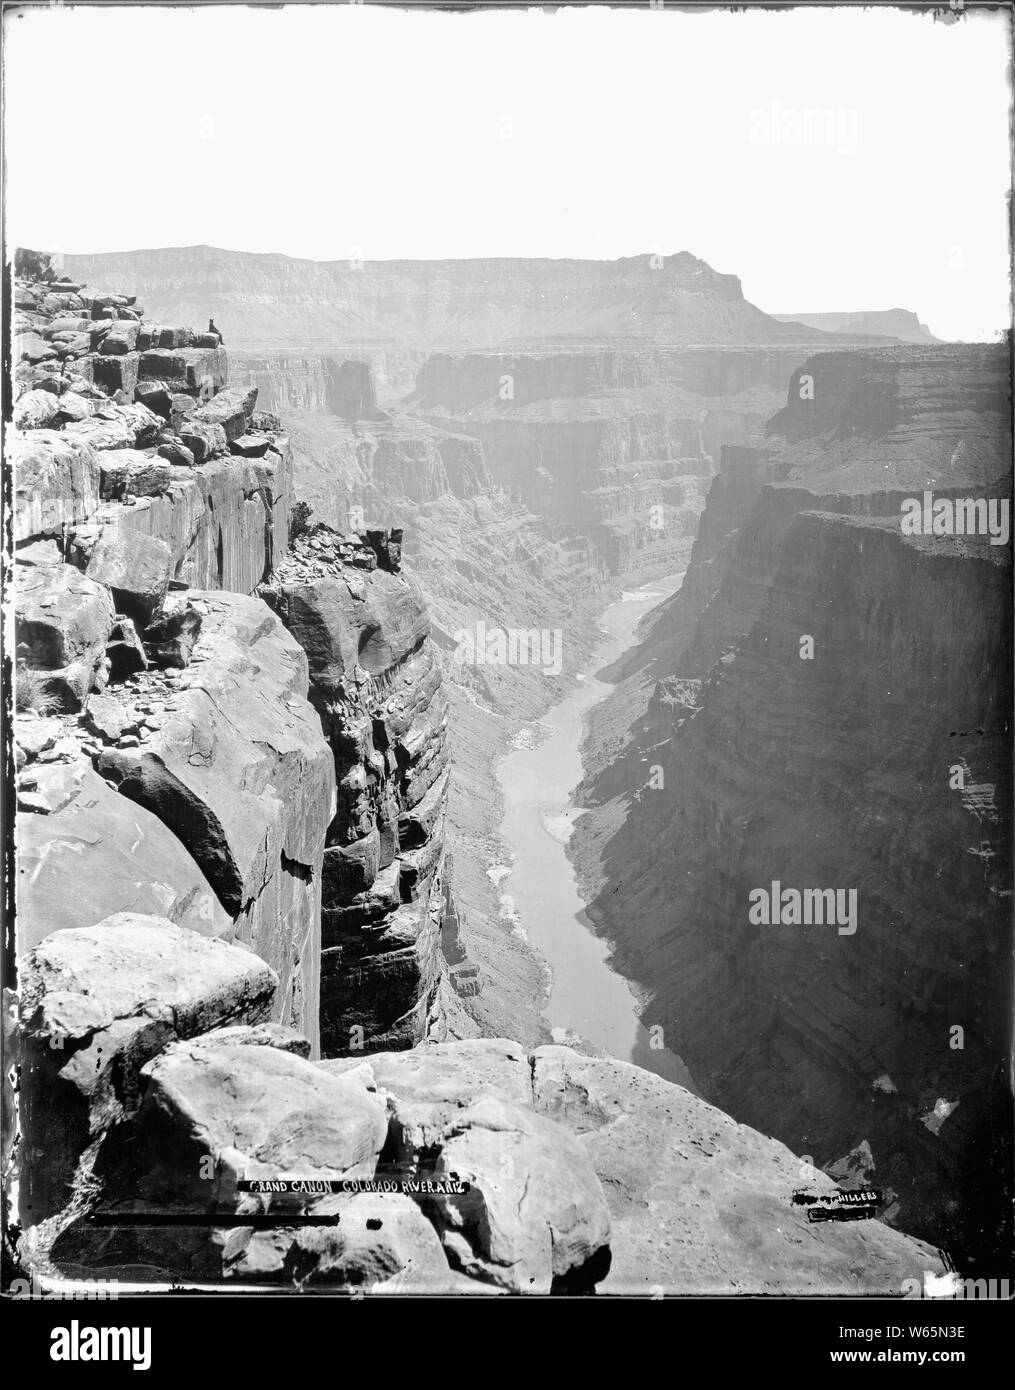 Il Grand Canyon del Fiume Colorado al piede della Toroweap, Arizona. G.S.A. No. 151 Grand Canyon National Park. Vecchio n. 80 e 151. L uomo non identificato in alto a sinistra. Vedere anche No. 61. 76 stessa come 66 su piccola scala. E apparentemente negativo sono stati distrutti. Mukuntoweap Valley, Utah Zion National Park. L'uomo sulla sommità del masso affacciato sul Canyon è probabilmente lo stesso uno mostrato nella foto n. 61 e 66. Negativo distrutto dalle autorità del geologo amministrativa., 1871 - 1878 Foto Stock